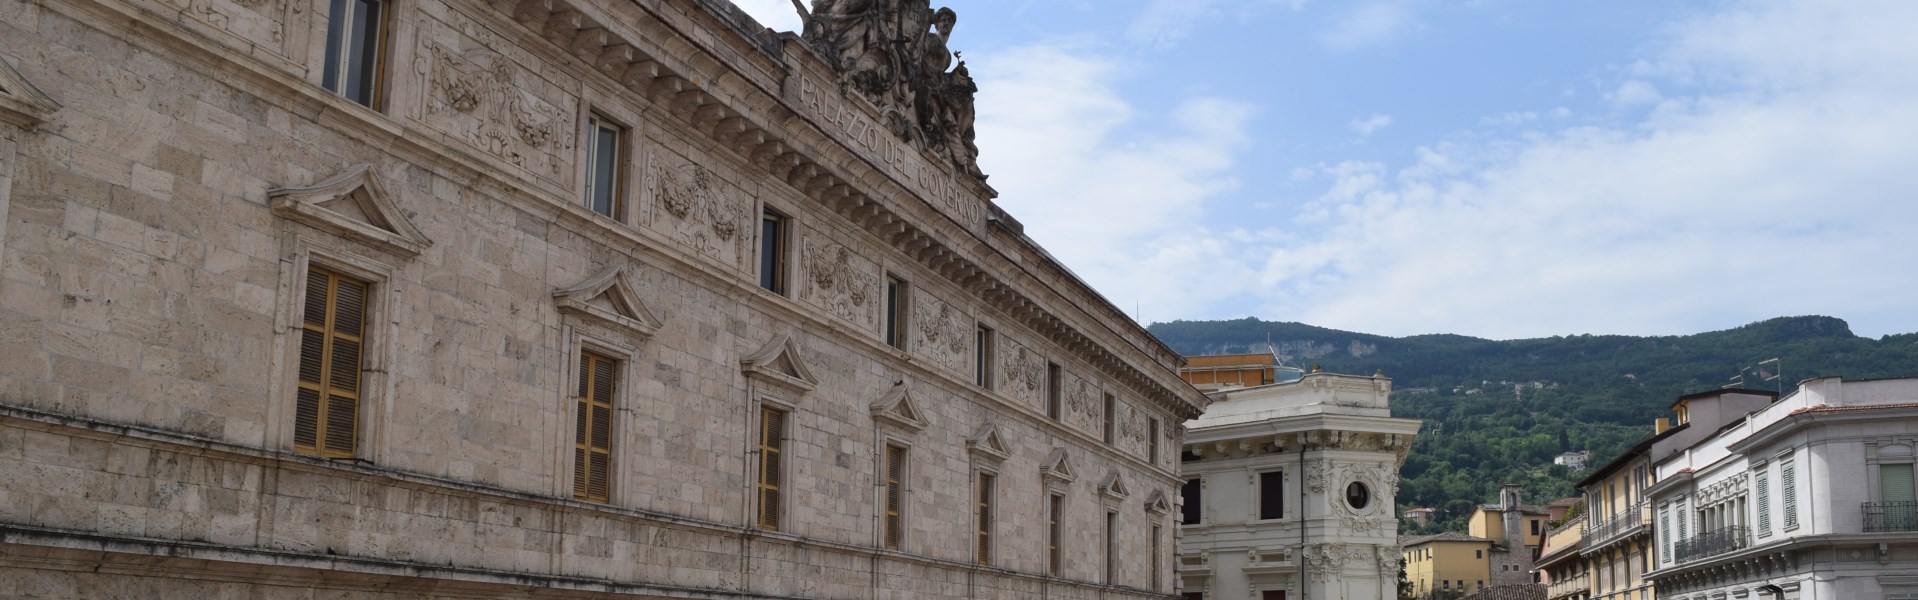 Ascoli Piceno - Palazzo dell'Arrengo